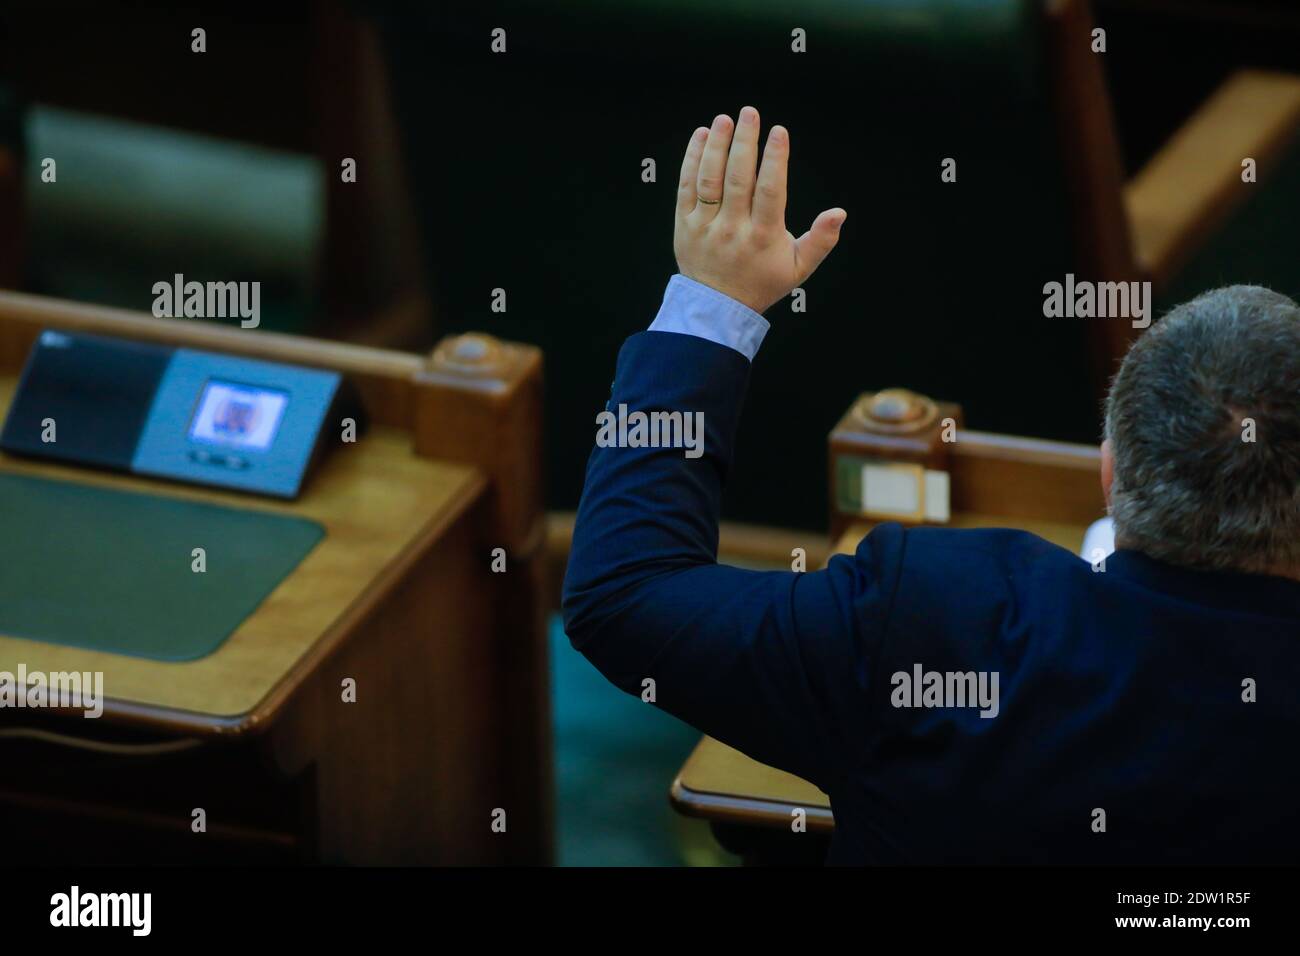 Bukarest, Rumänien - 22. Dezember 2020: Rumänische Senatoren stimmen in einer vollen Senatssitzung über Gesetzesentwürfe ab, indem sie ihre Hände heben. Stockfoto